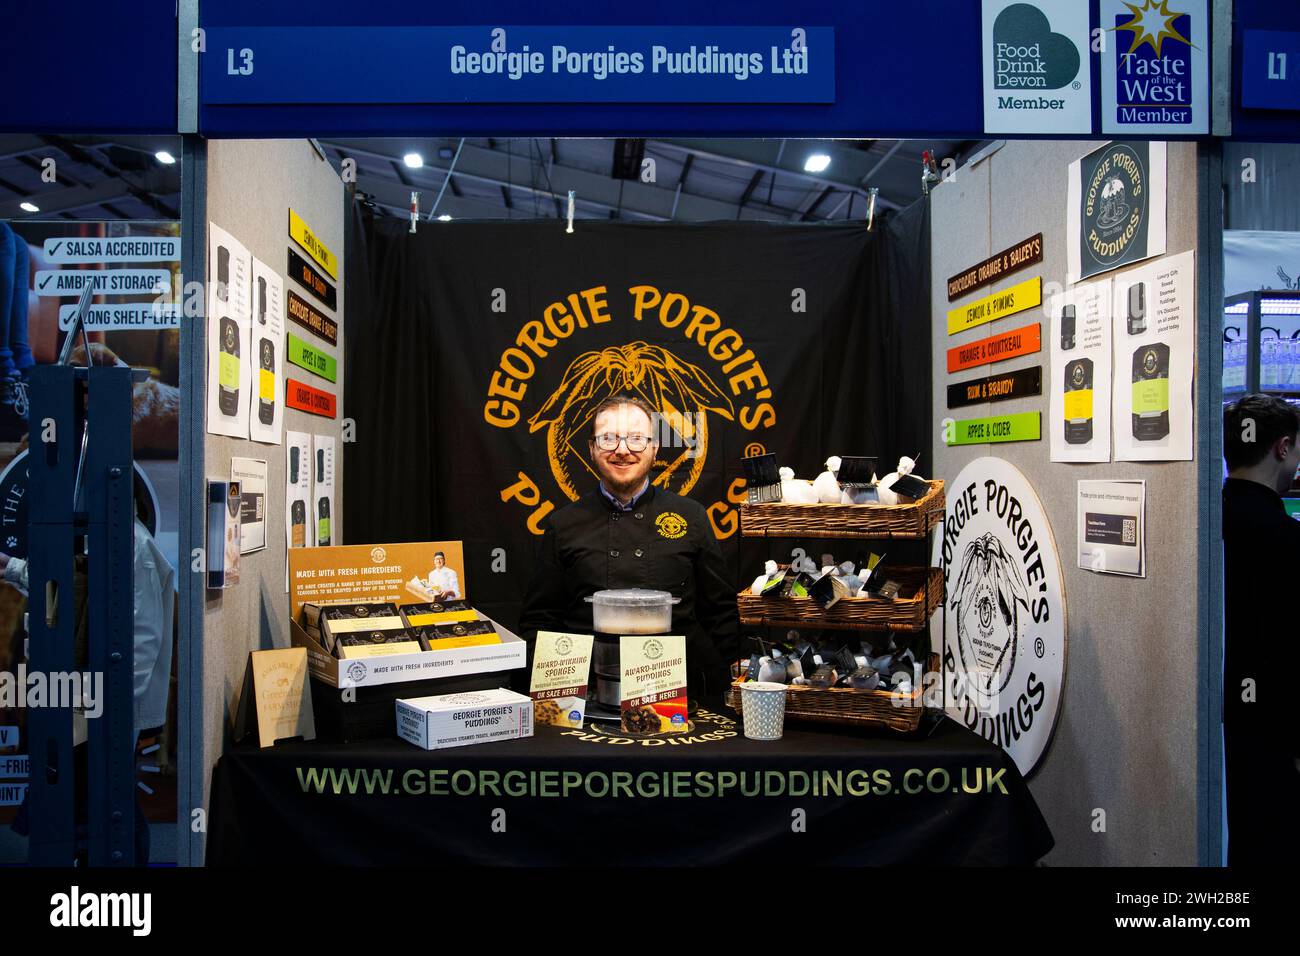 Georgie Porgies Puddings Stand auf der Messe für Essen, Trinken, Catering und Gastgewerbe, die am 7. Februar 2014 in Westpoint Exeter U.K stattfand Stockfoto